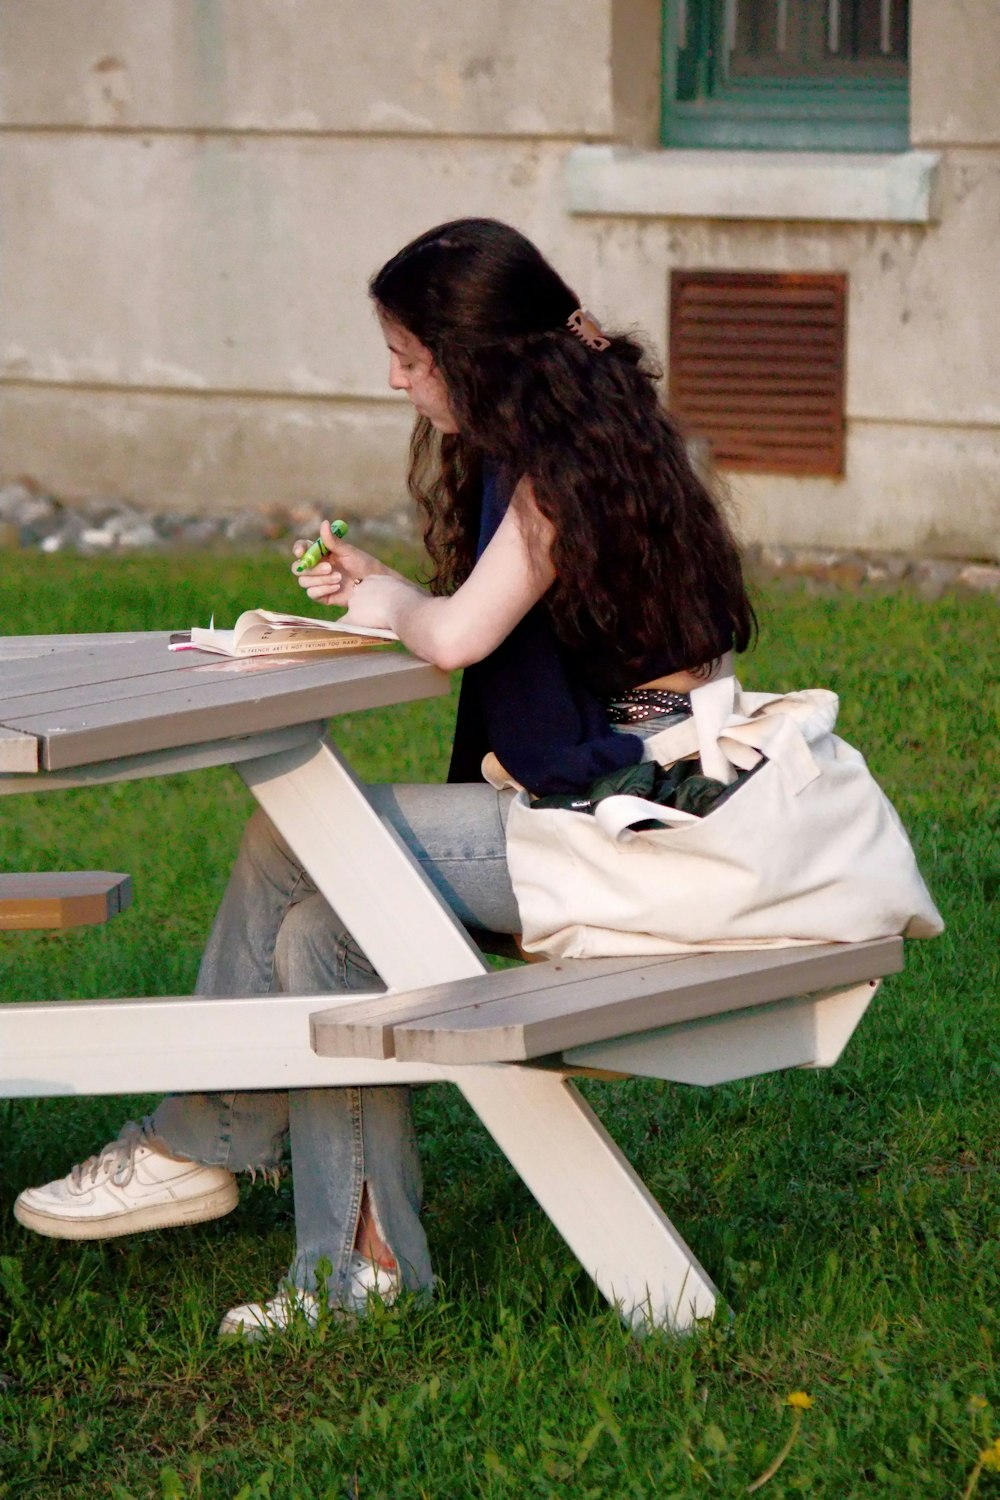 Eine Frau, die an einem Picknicktisch sitzt und ein Sandwich isst